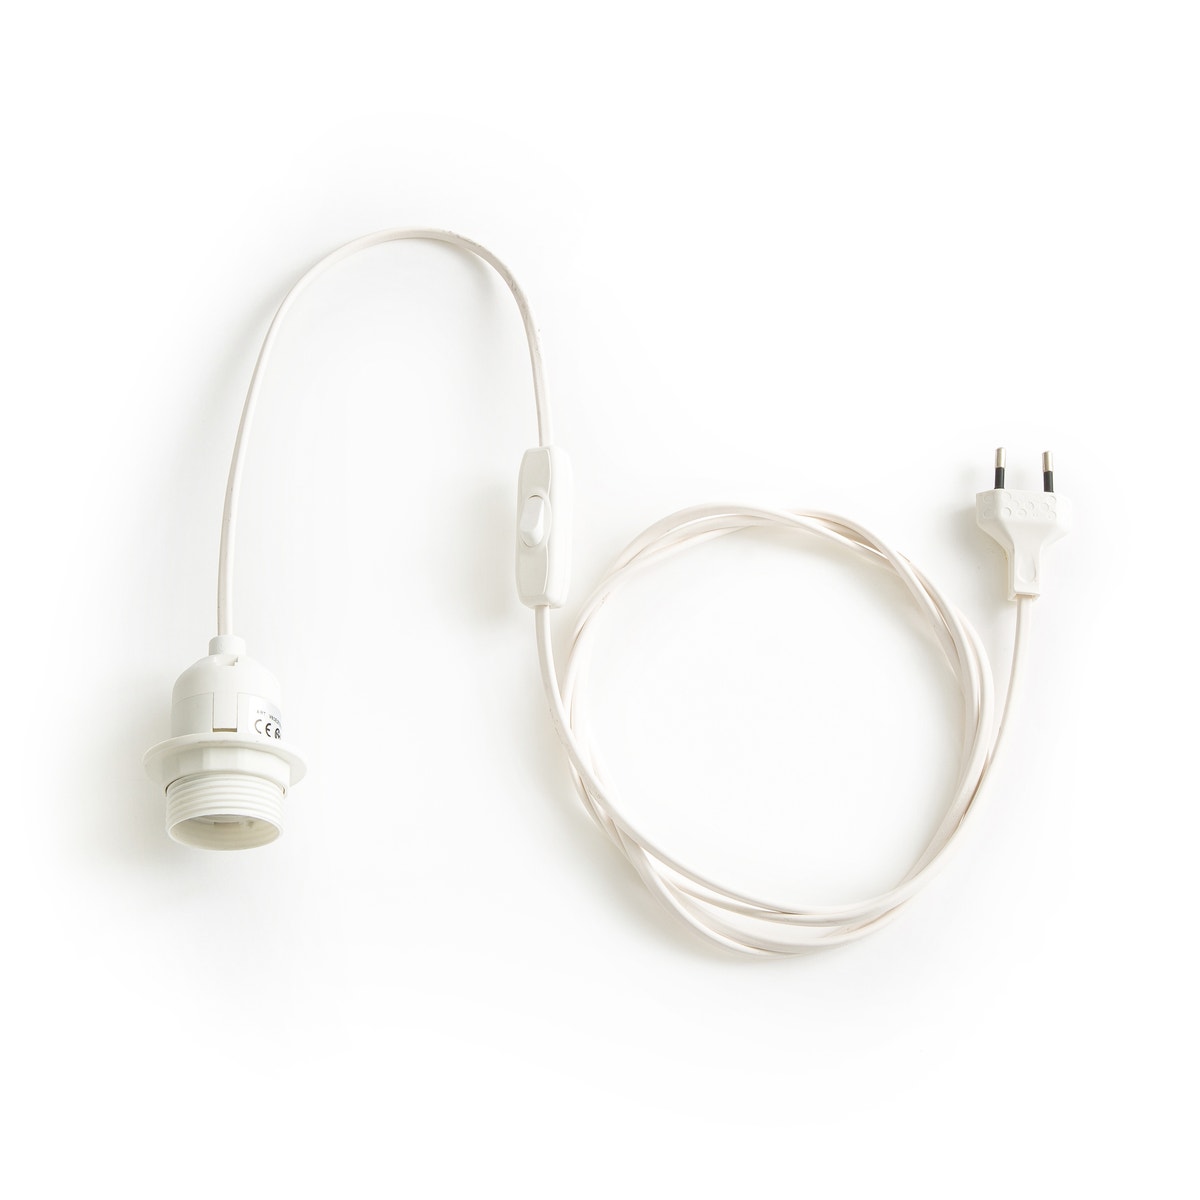 Câble électrique pour suspension : cordon textile blanc ou noir et douille  E27